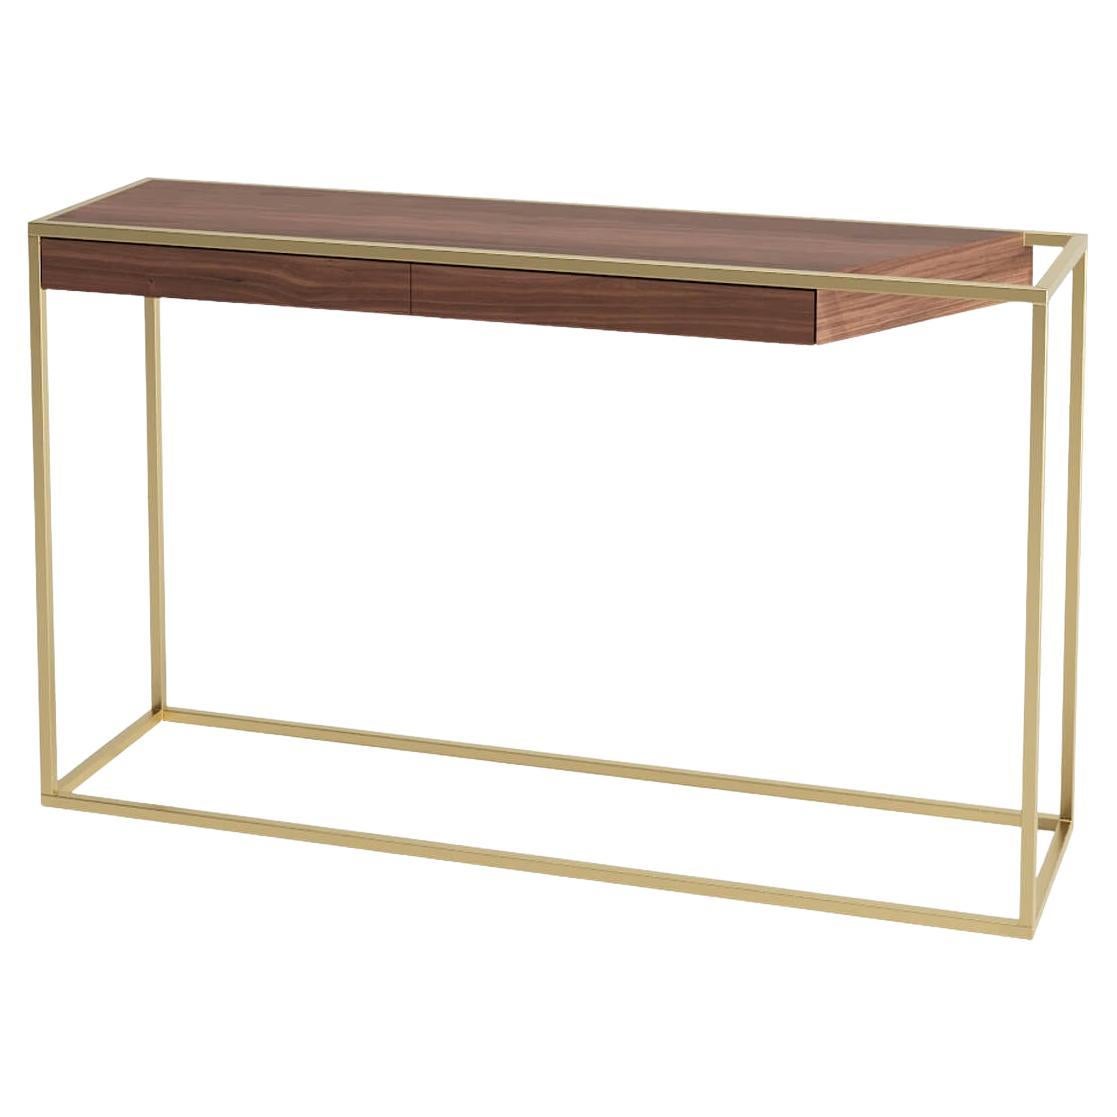 Tavolo console rettangolare moderno e minimalista in Wood Wood e ottone spazzolato